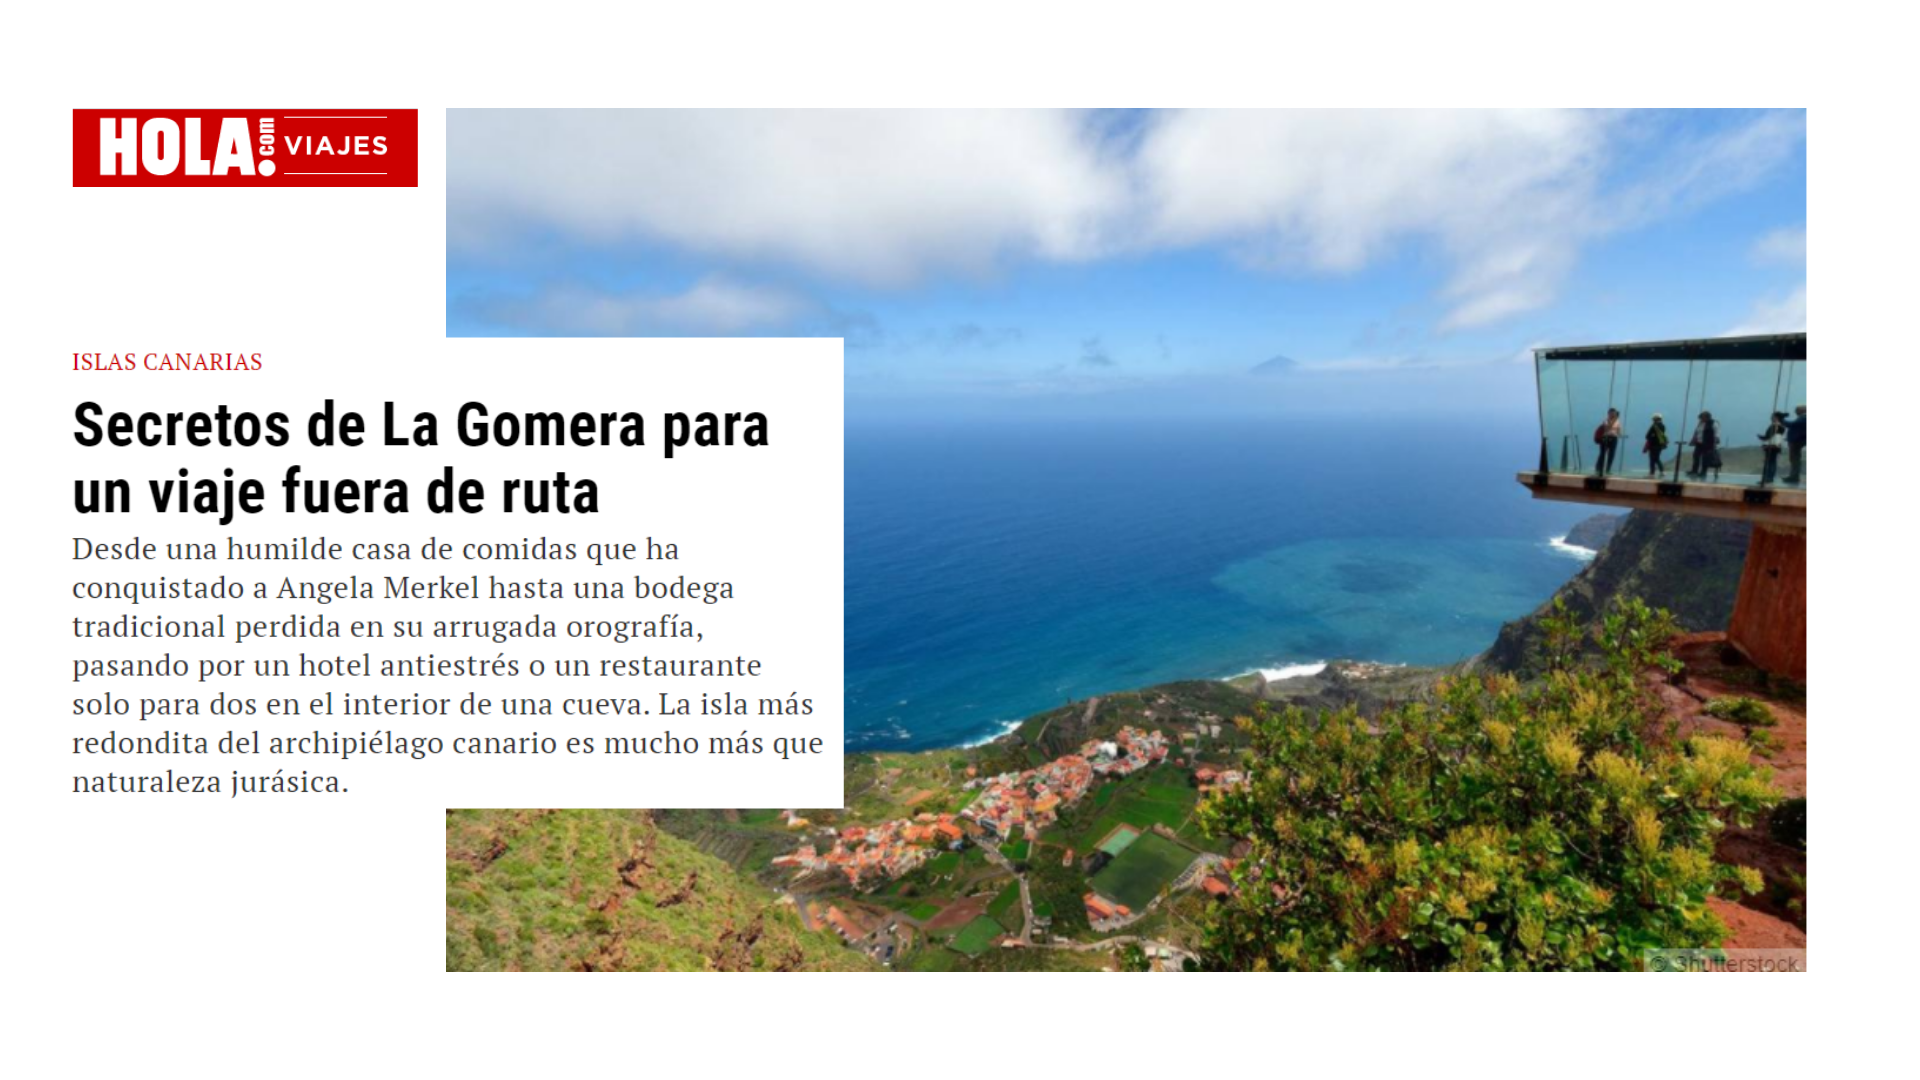 La revista ¡Hola! muestra los secretos de La Gomera como destino turístico / CanariasNoticias.es